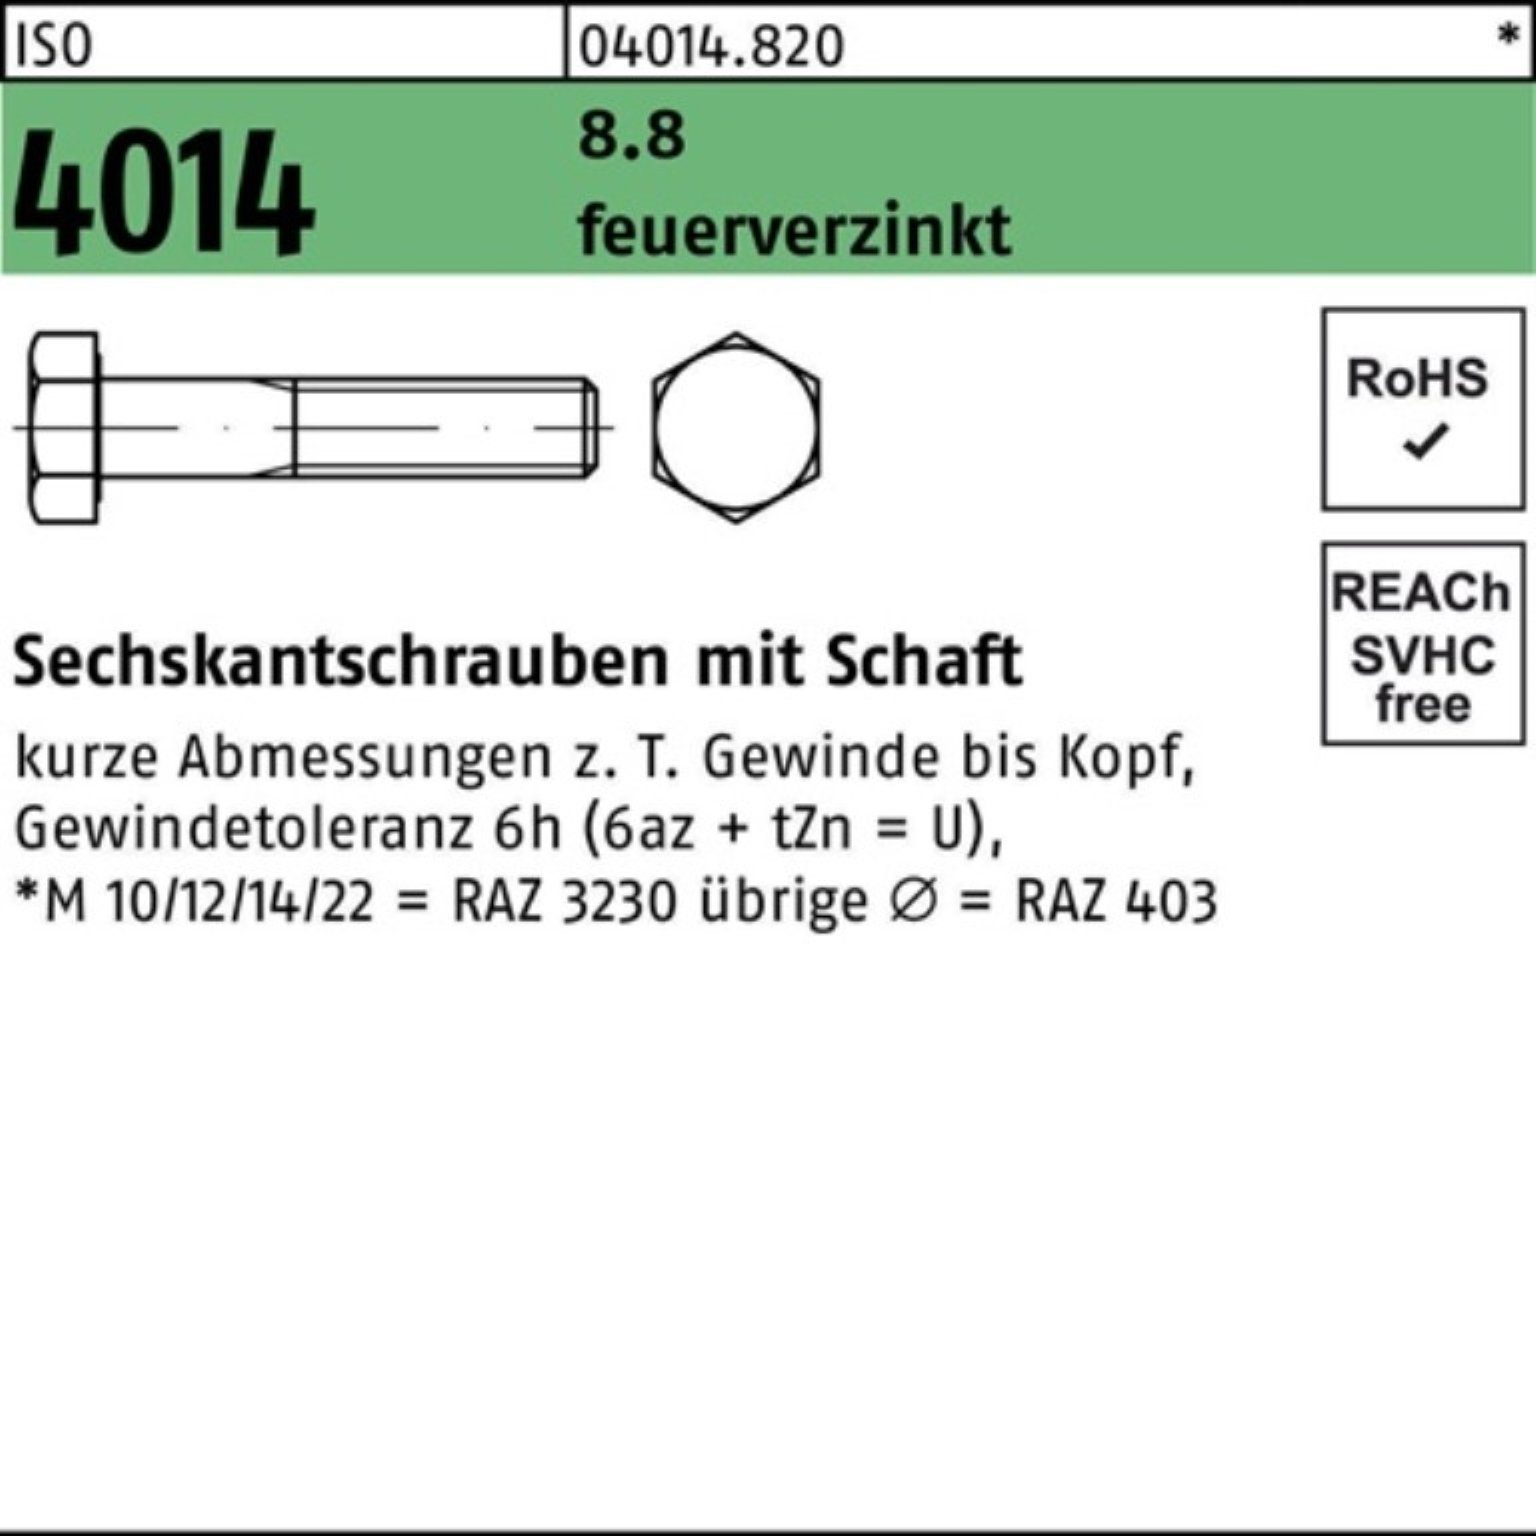 Bufab Sechskantschraube 100er Pack Sechskantschraube ISO 4014 Schaft M10x 40 8.8 feuerverz. 10